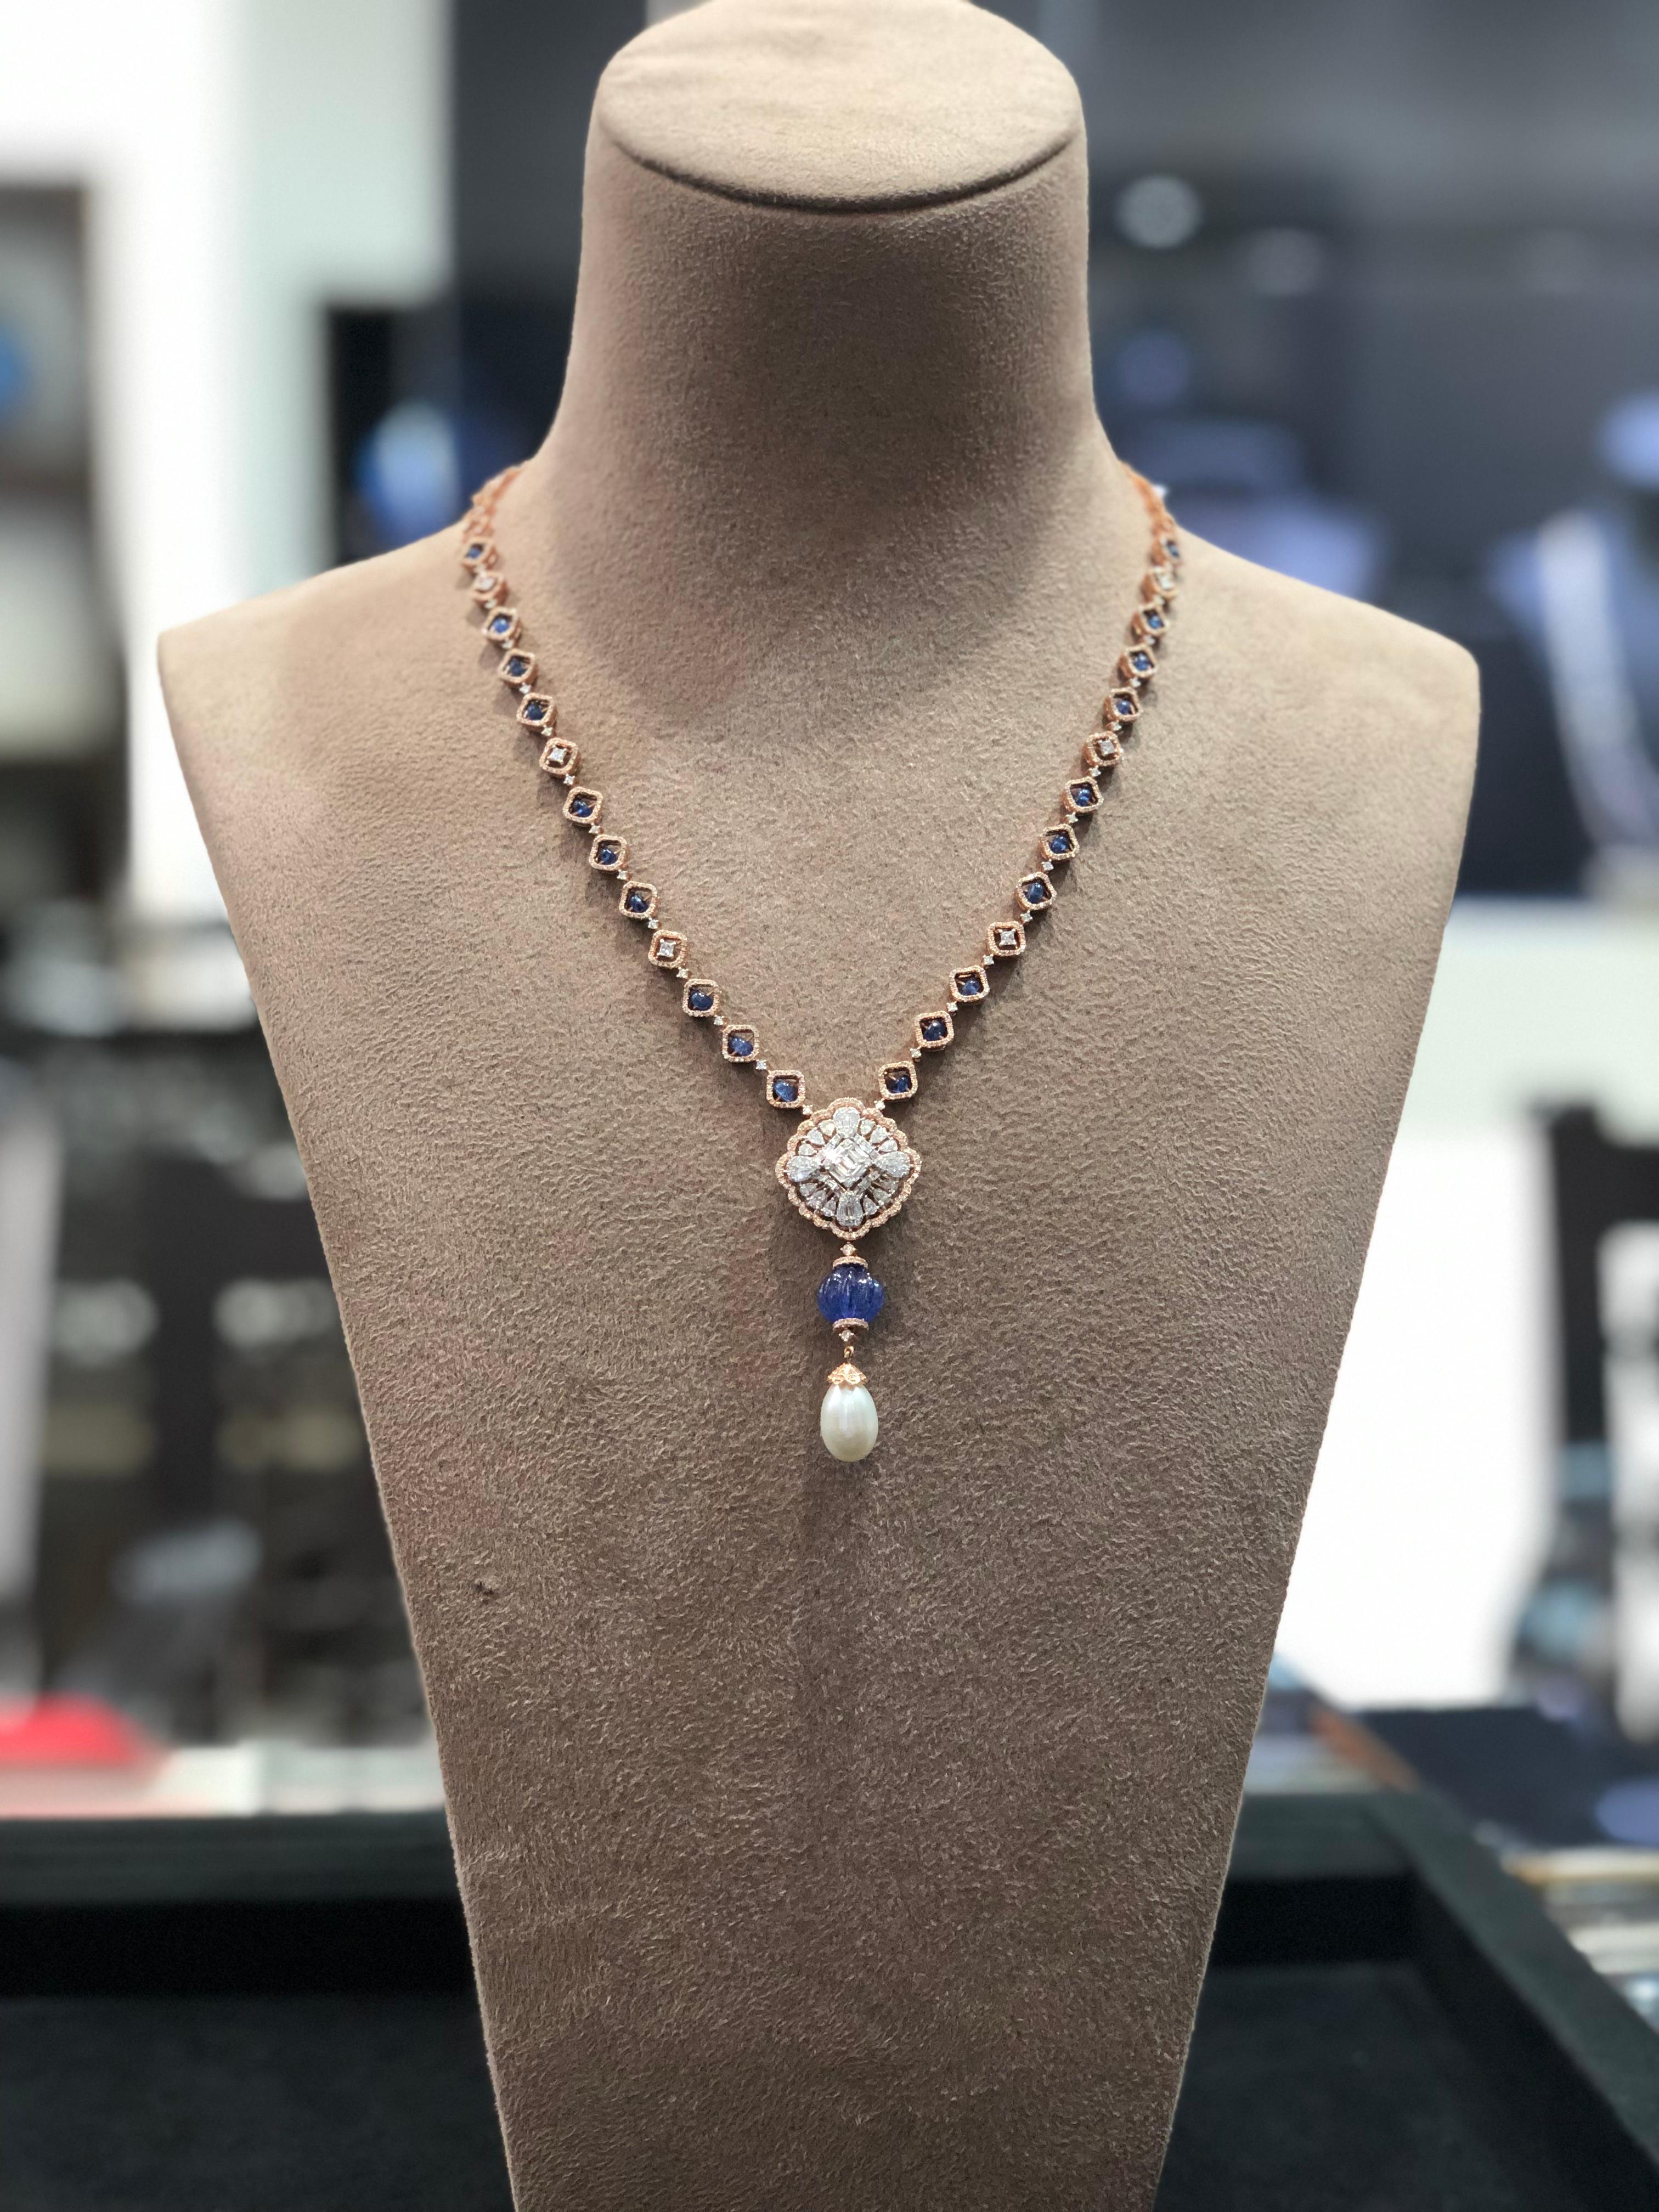 halskette aus 18 Karat Roségold, Saphiren, Tansaniten, Perlen und Diamanten.
Eine beeindruckende Halskette mit Diamanten und Edelsteinen für alle, die ihre Garderobe mit modernem, minimalistischem und geometrisch inspiriertem Schmuck aufwerten